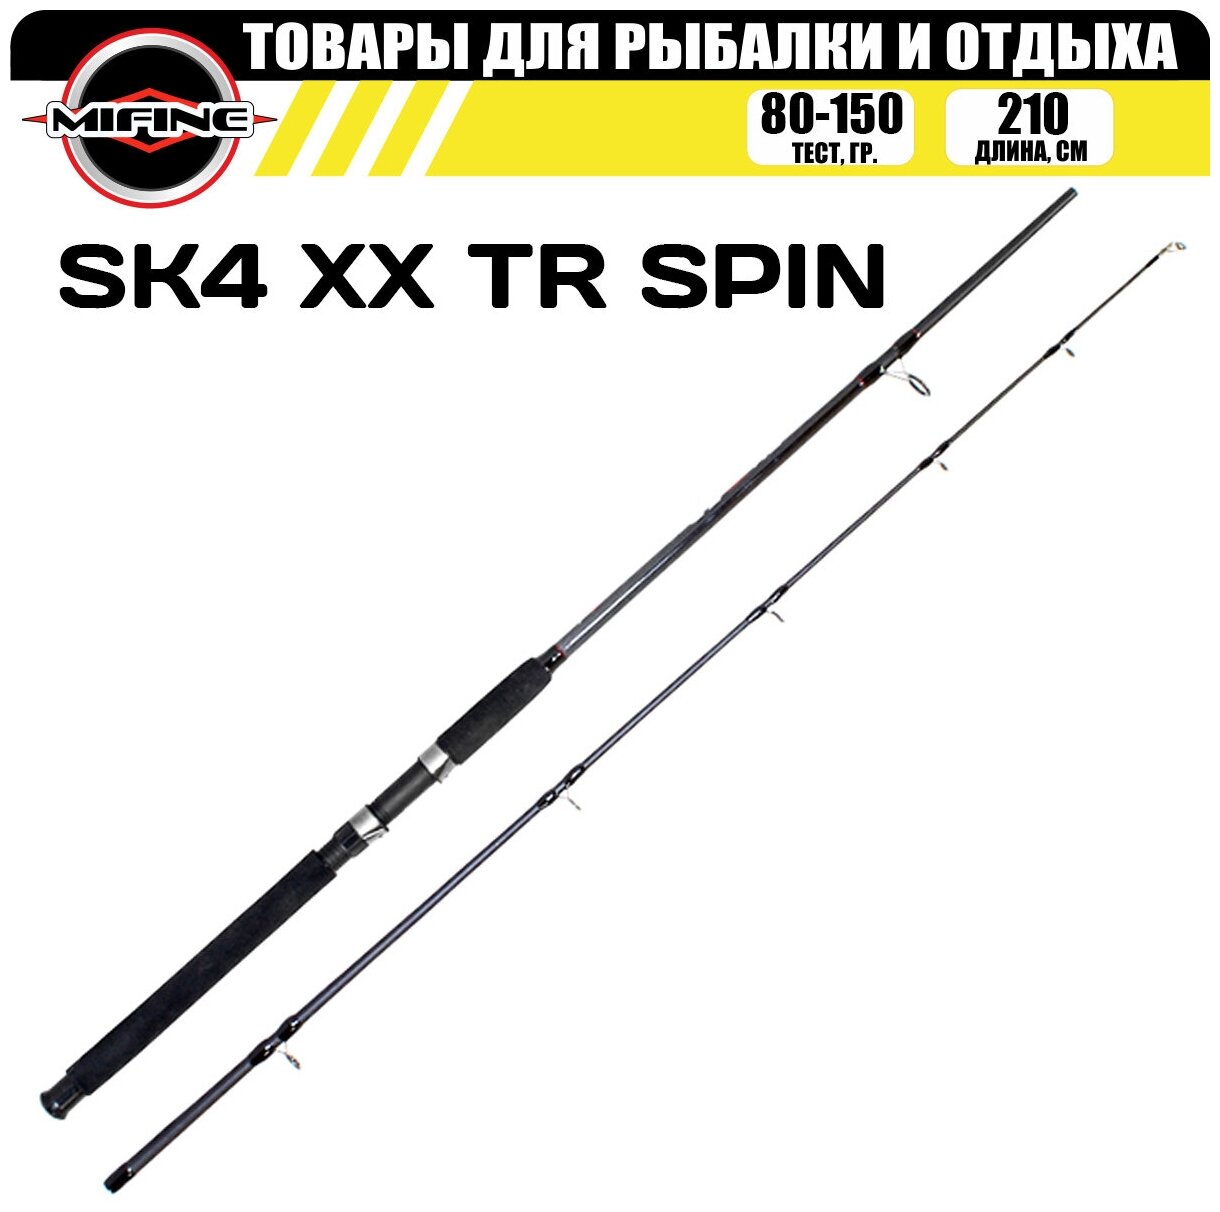 Спиннинг штекерный MIFINE SK4 XX TR SPIN 2.1м (80-150гр), рыболовный, для рыбалки